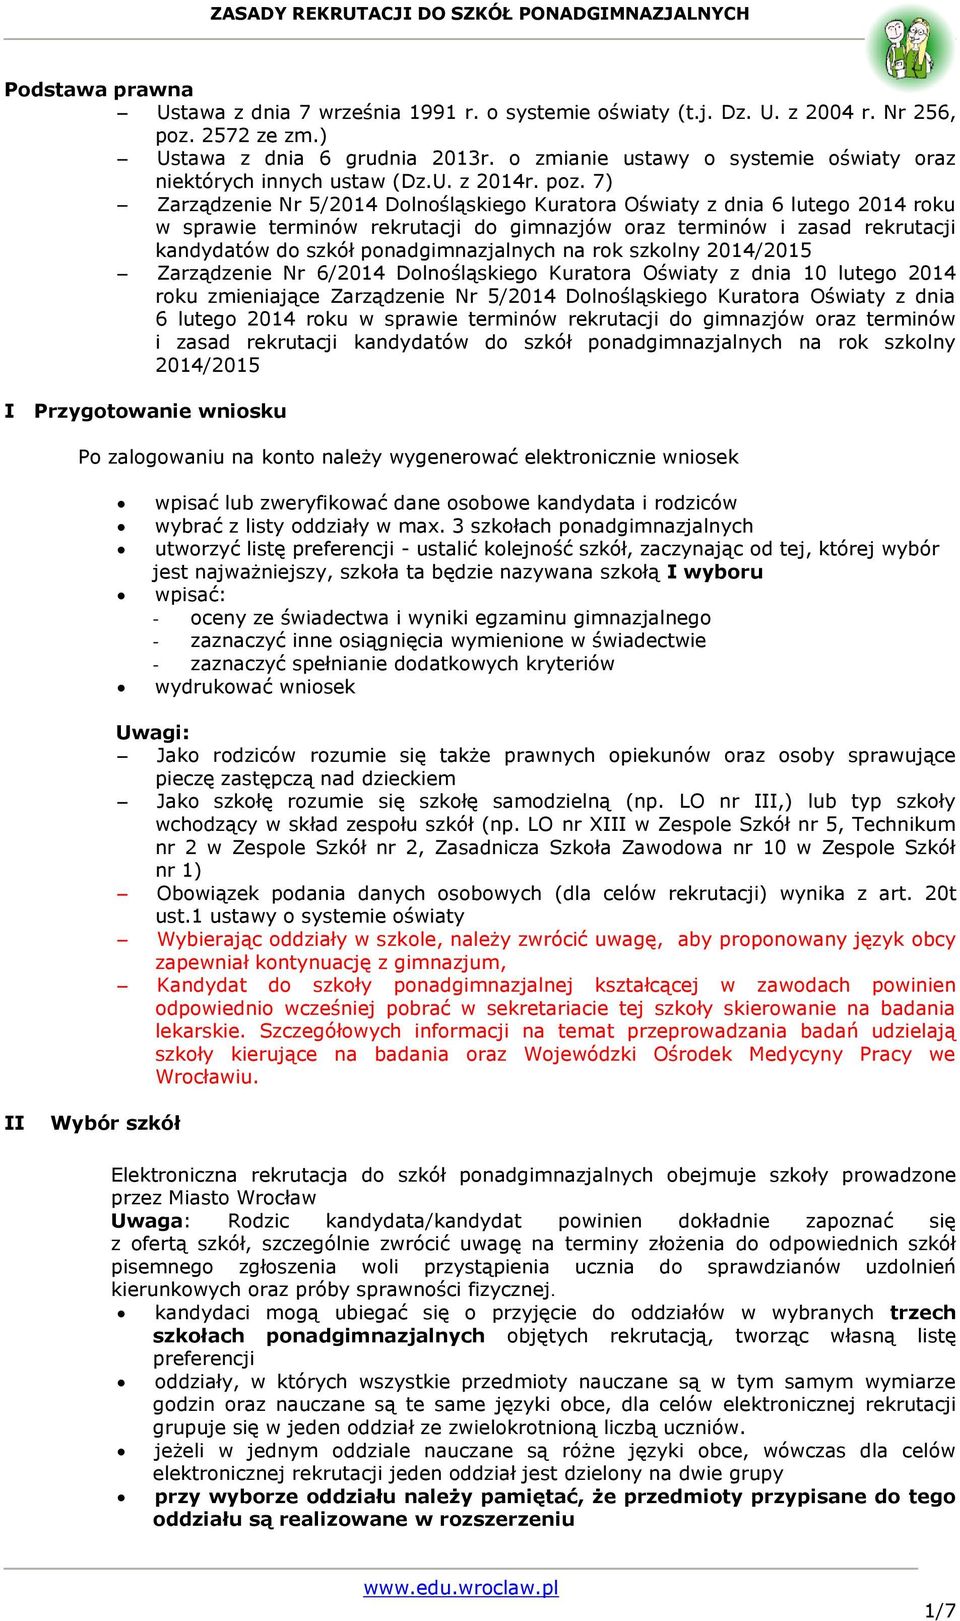 7) Zarządzenie Nr 5/2014 Dolnośląskiego Kuratora Oświaty z dnia 6 lutego 2014 roku w sprawie terminów rekrutacji do gimnazjów oraz terminów i zasad rekrutacji kandydatów do szkół ponadgimnazjalnych